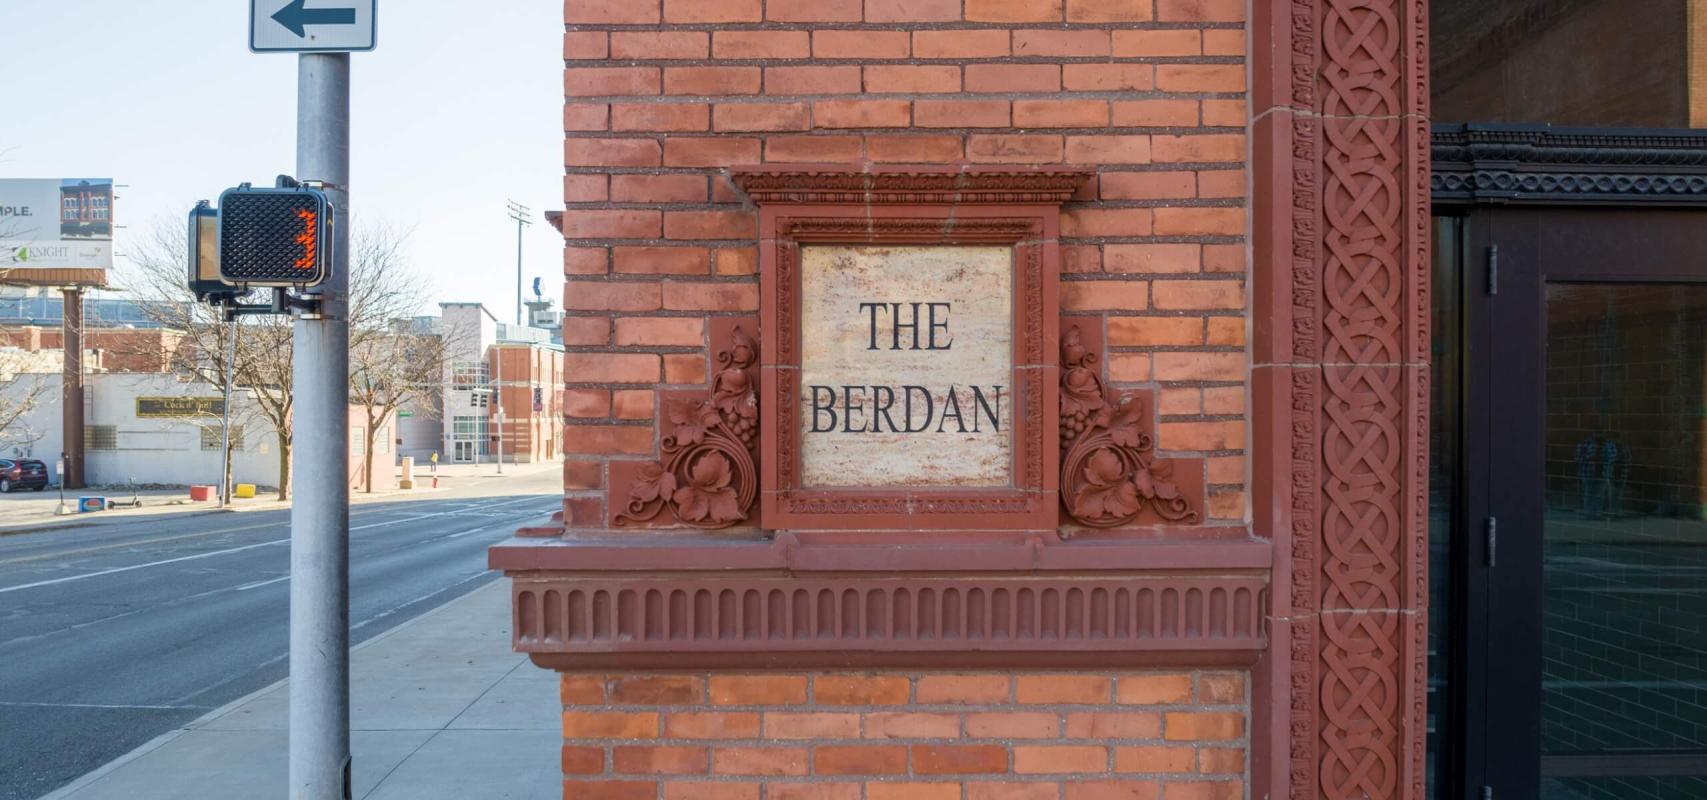 The Berdan